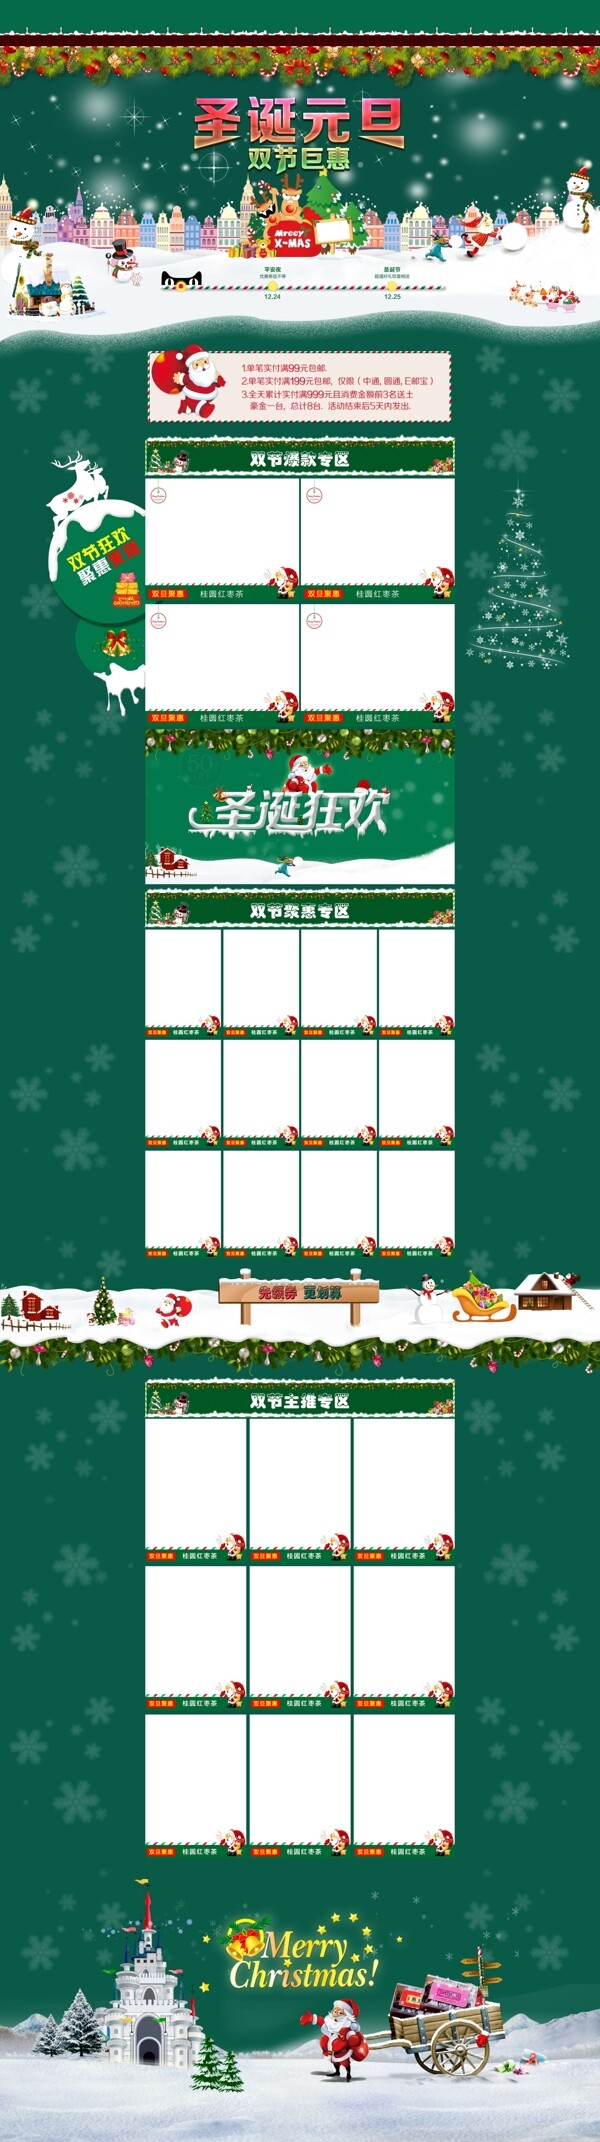 2015圣诞节天猫淘宝首页设计圣诞节元旦